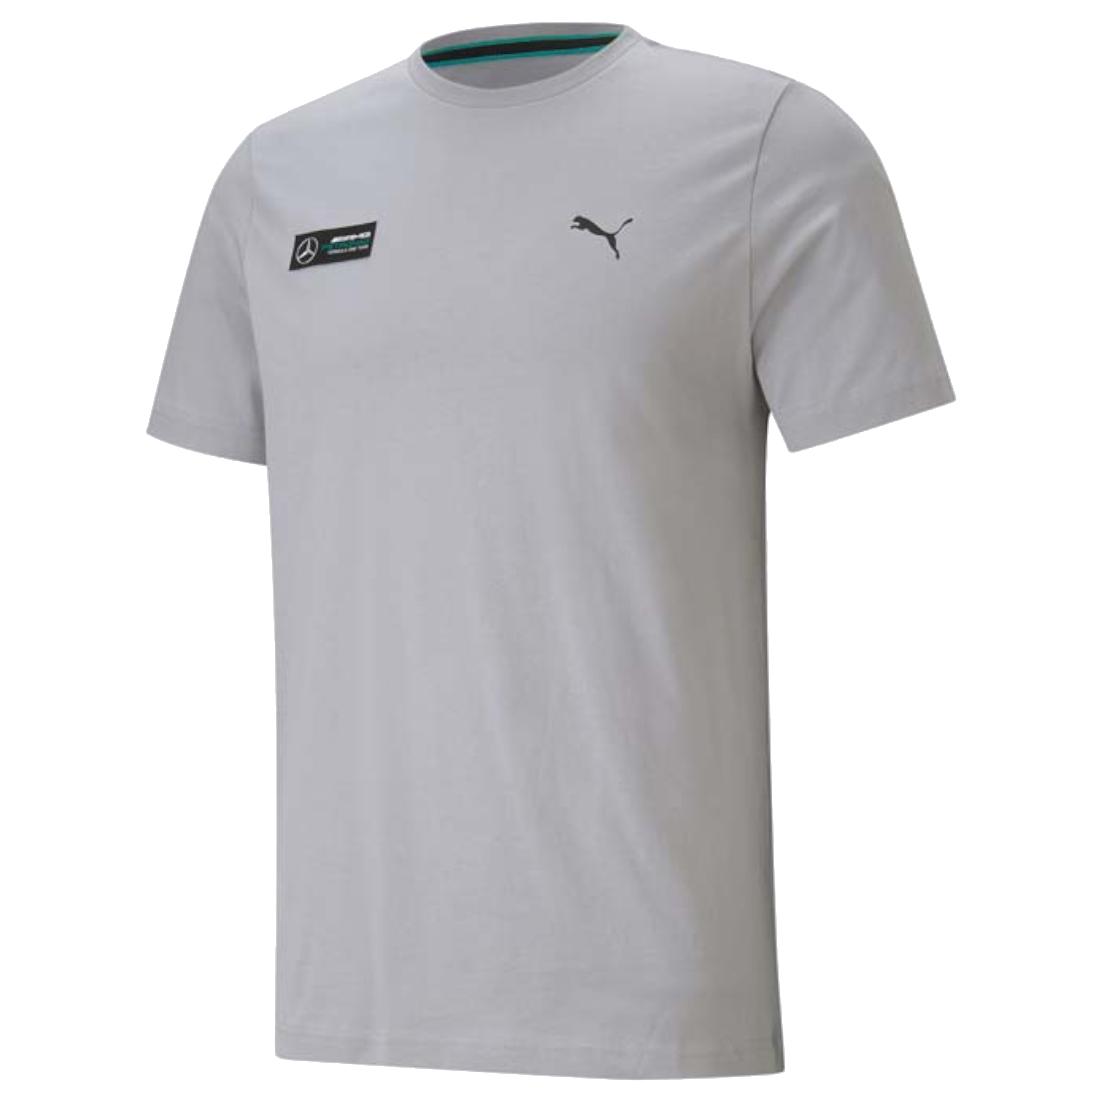 Puma Mercedes F1 Essentials Tee, Mens grey T-shirt